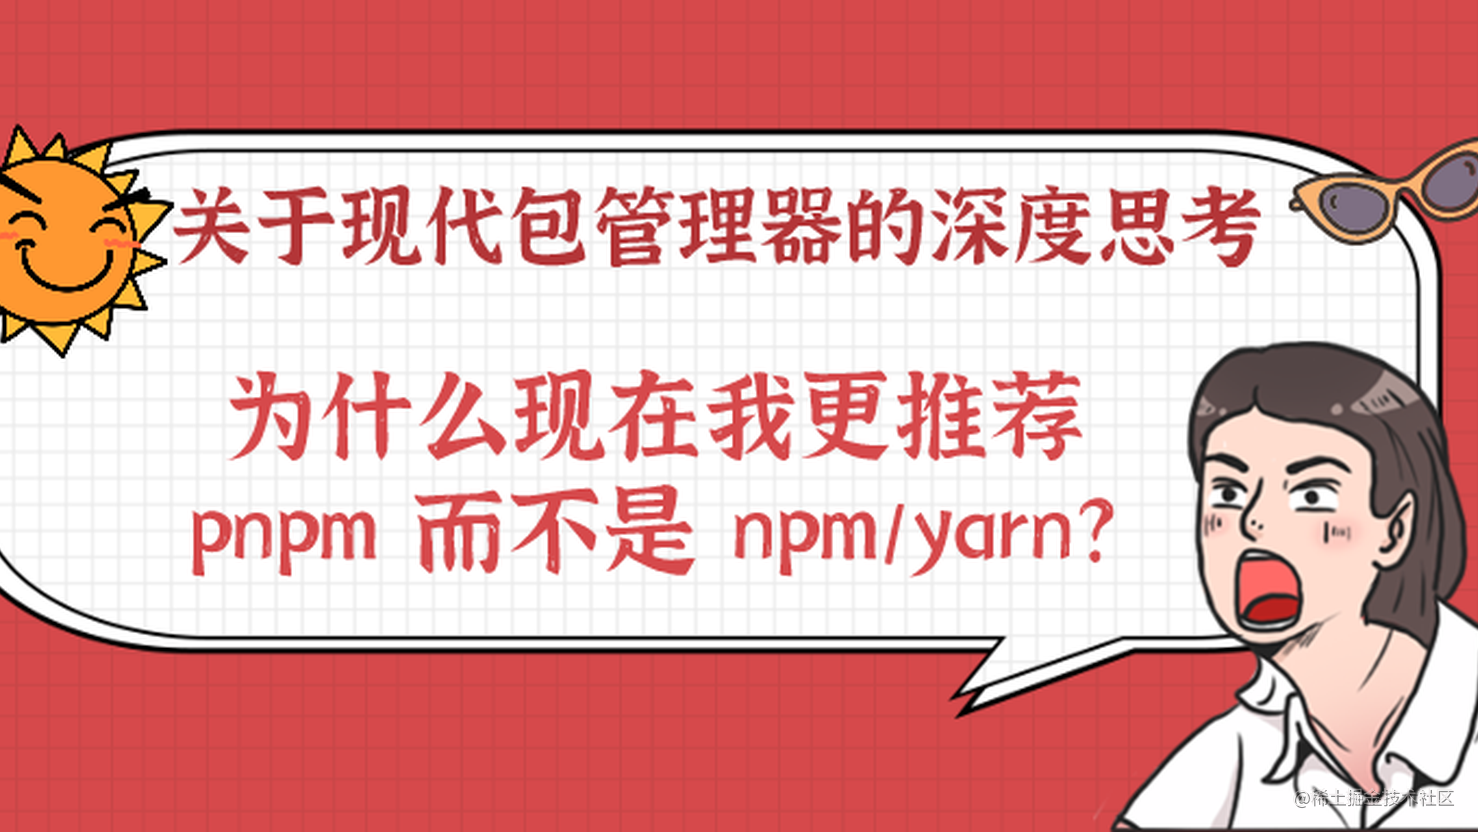 关于现代包管理器的深度思考——为什么现在我更推荐 pnpm 而不是 npm/yarn?